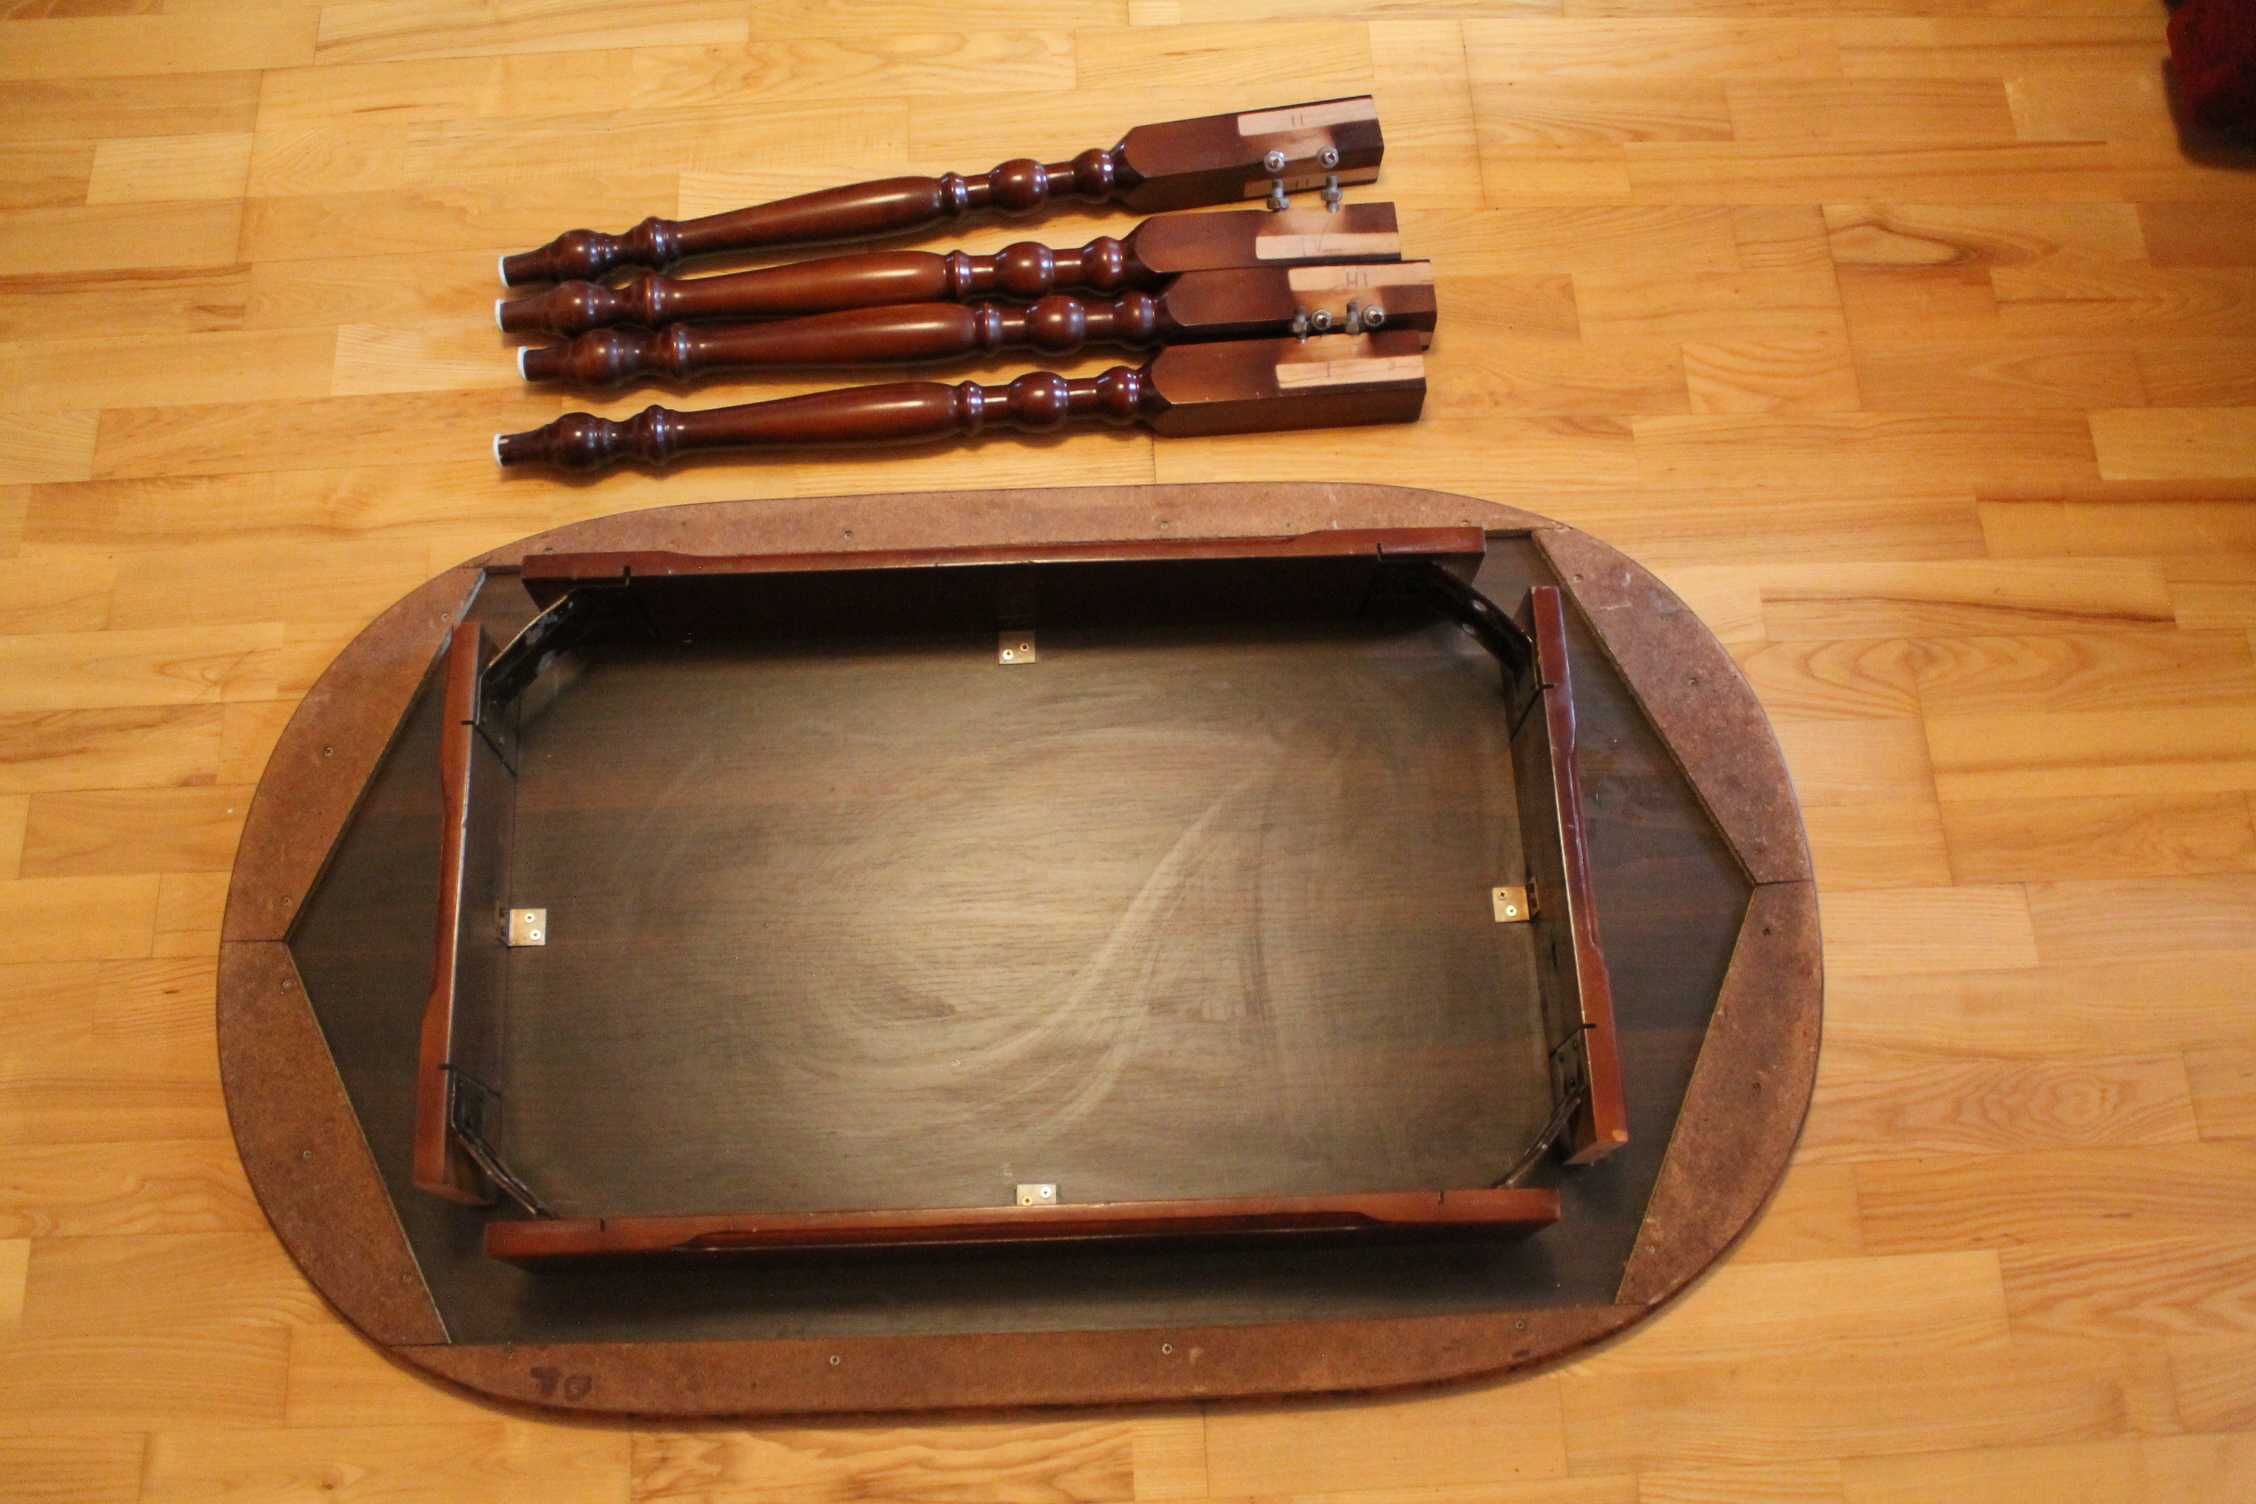 Stół drewniany, owalny